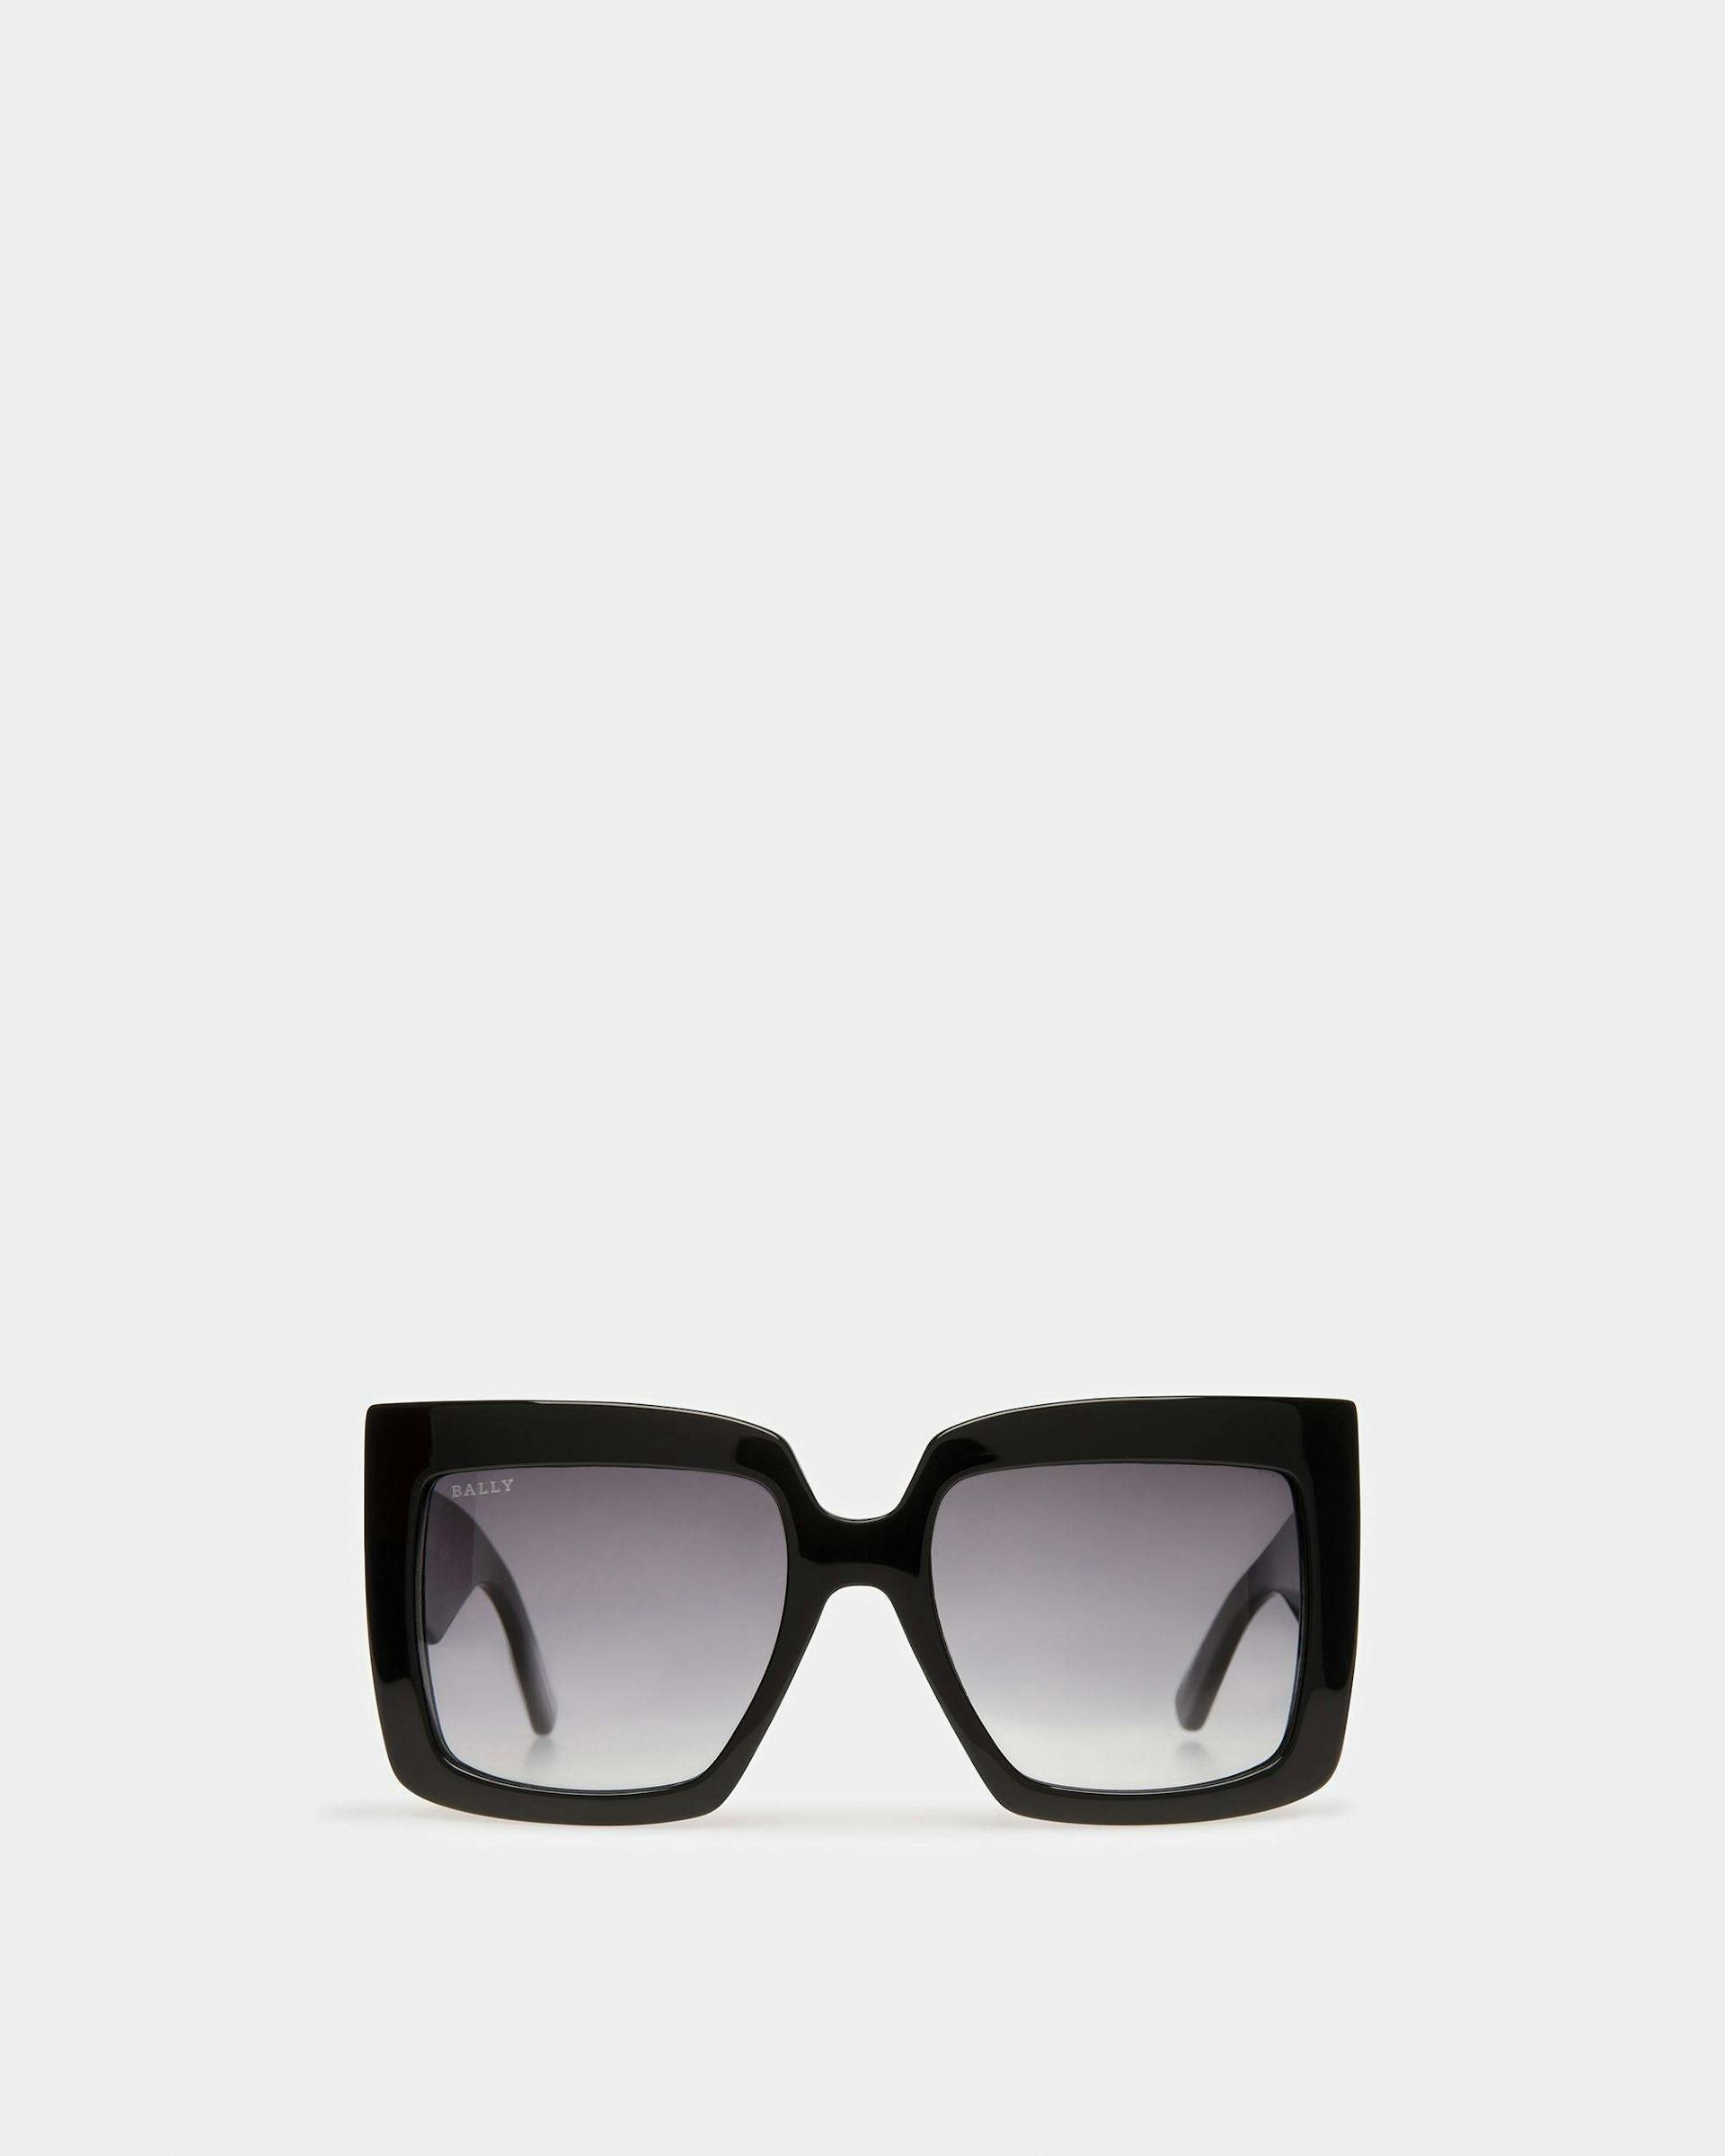 Carla Square Oversized Sunglasses In Black - Women's - Bally - 01